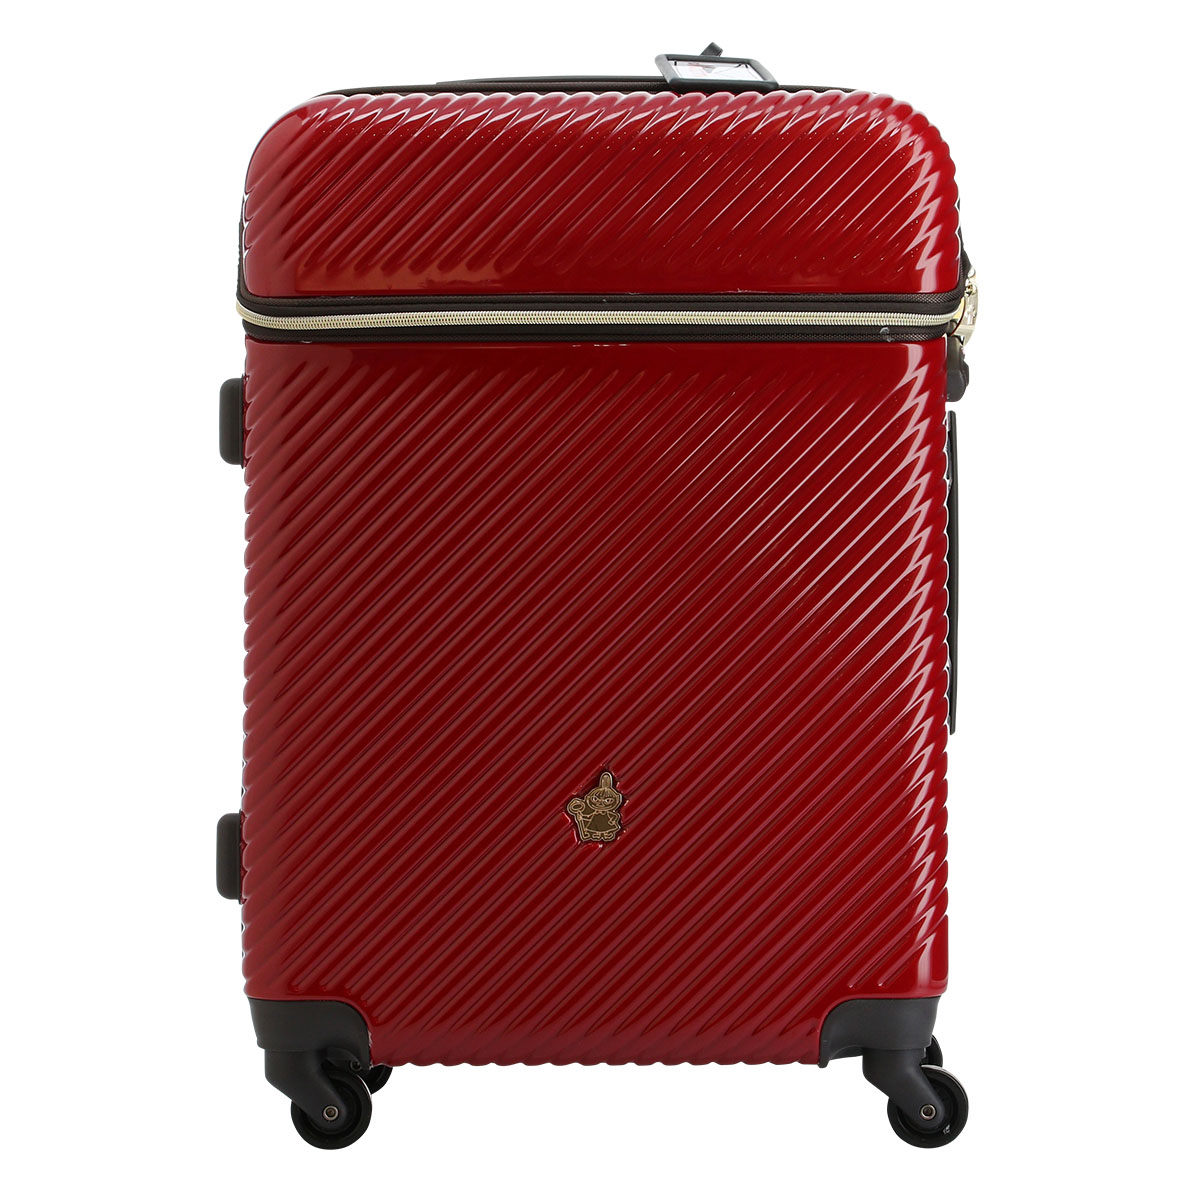 ムーミン スーツケース 当社限定 かわいい 49L 63cm 3.8kg MM2-018 